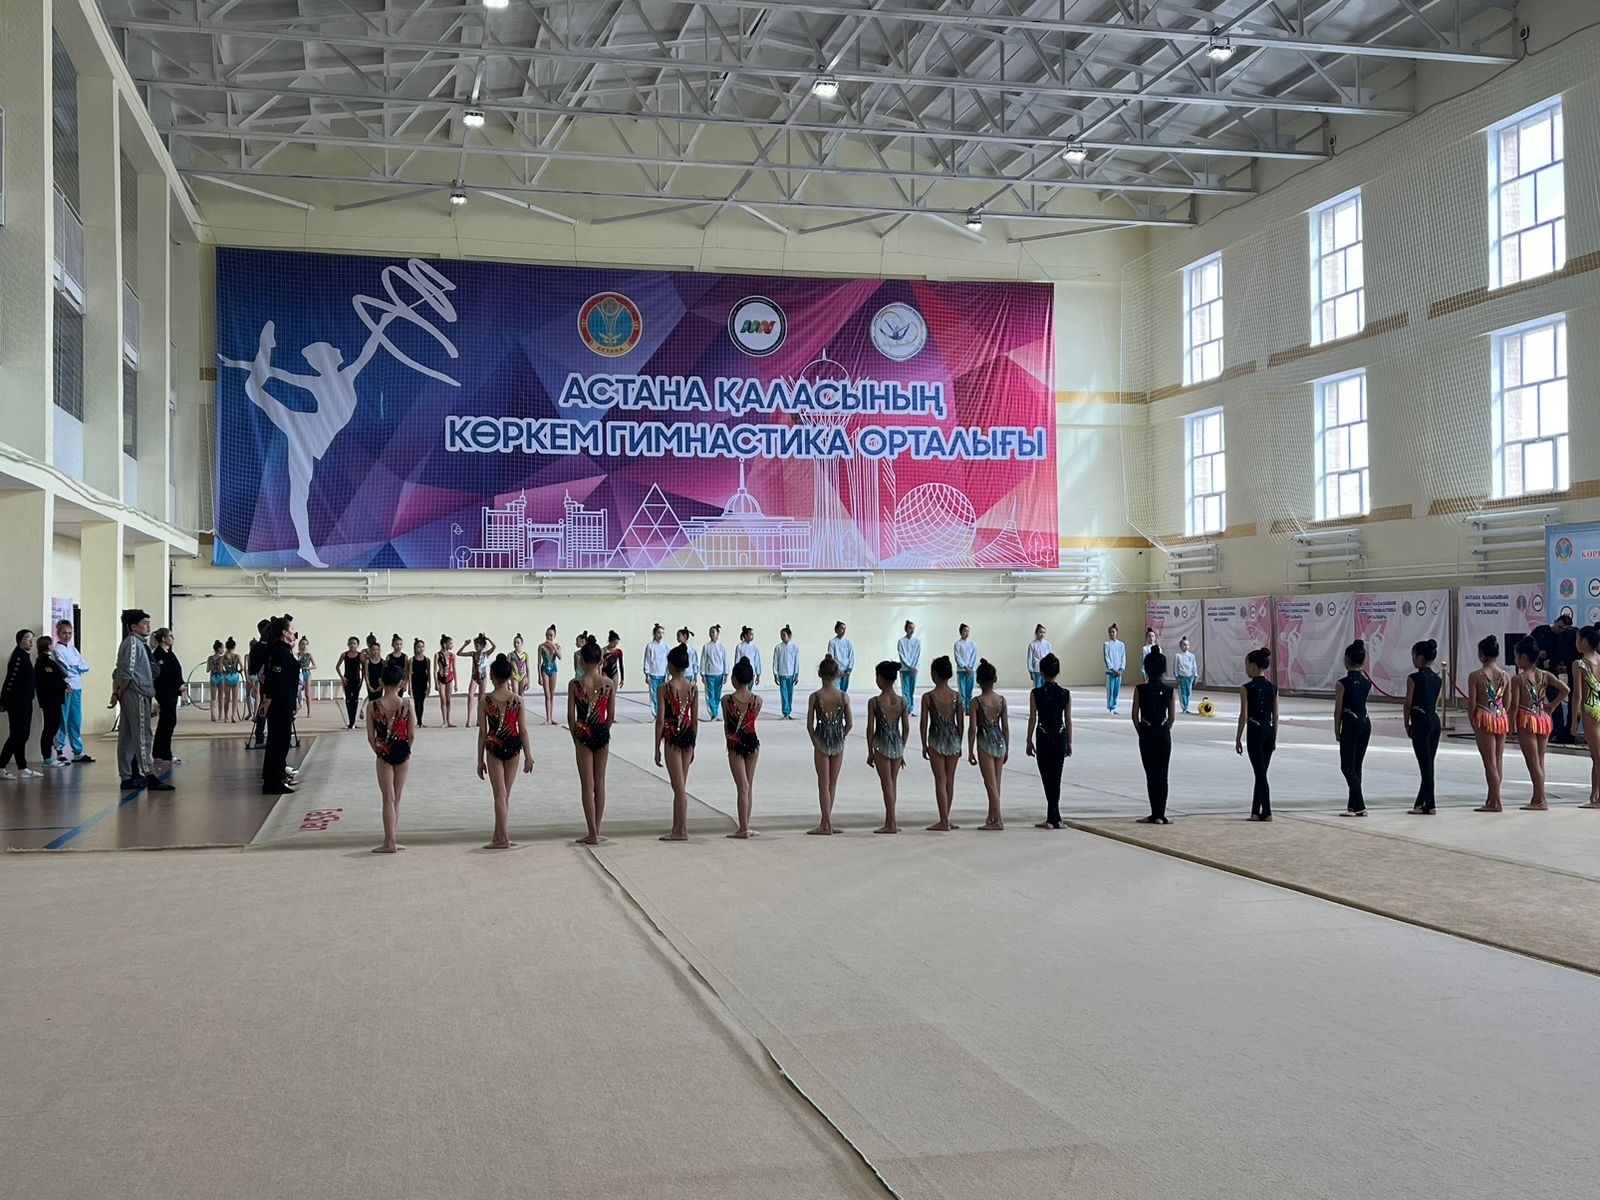 Астанада көркем гимнастика орталығы қолданысқа берілді